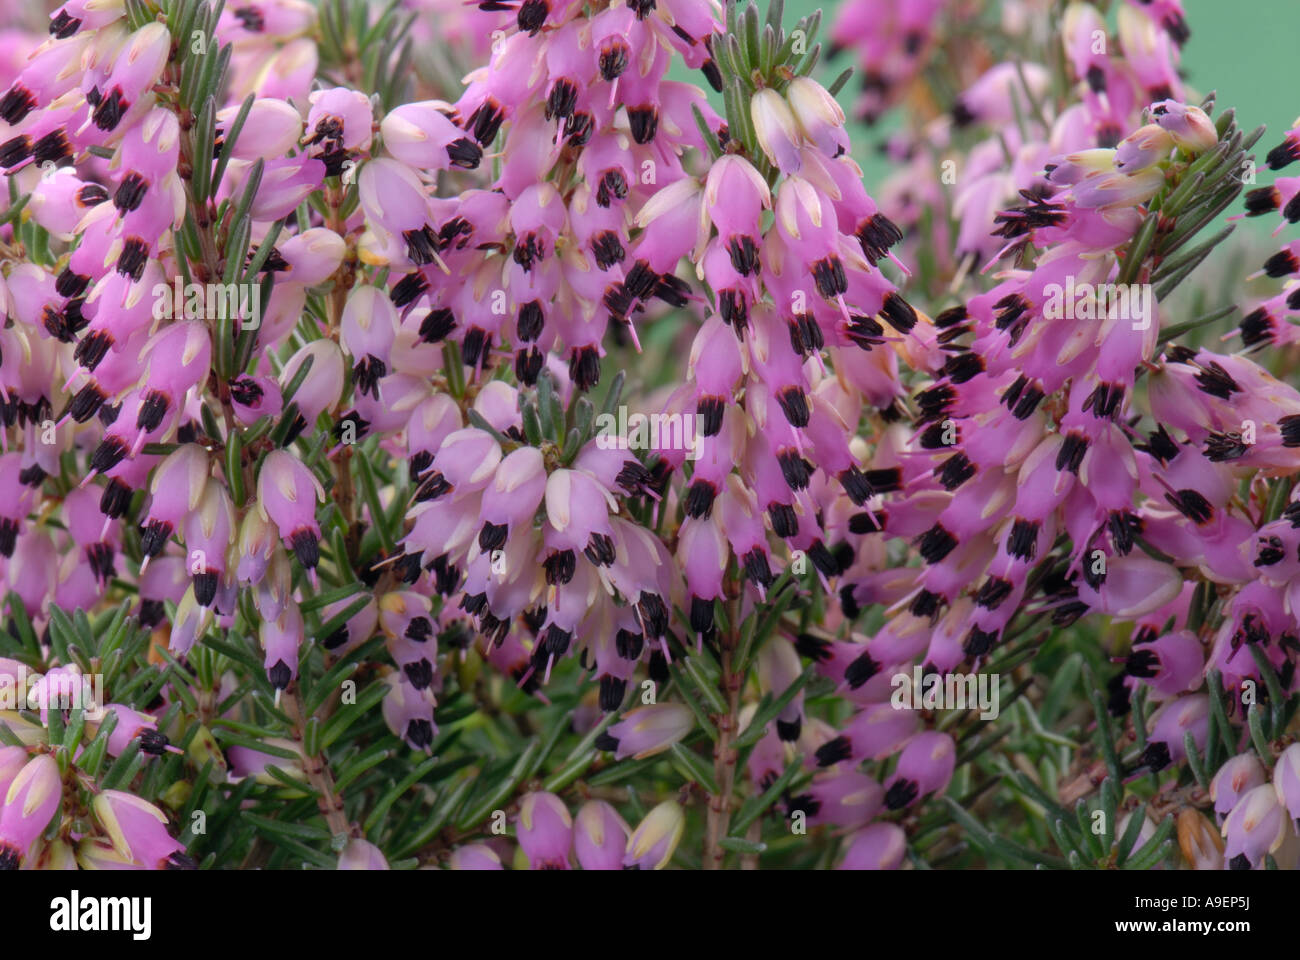 Dale, Darley Heath (Erica x darleyensis), flowering Stock Photo